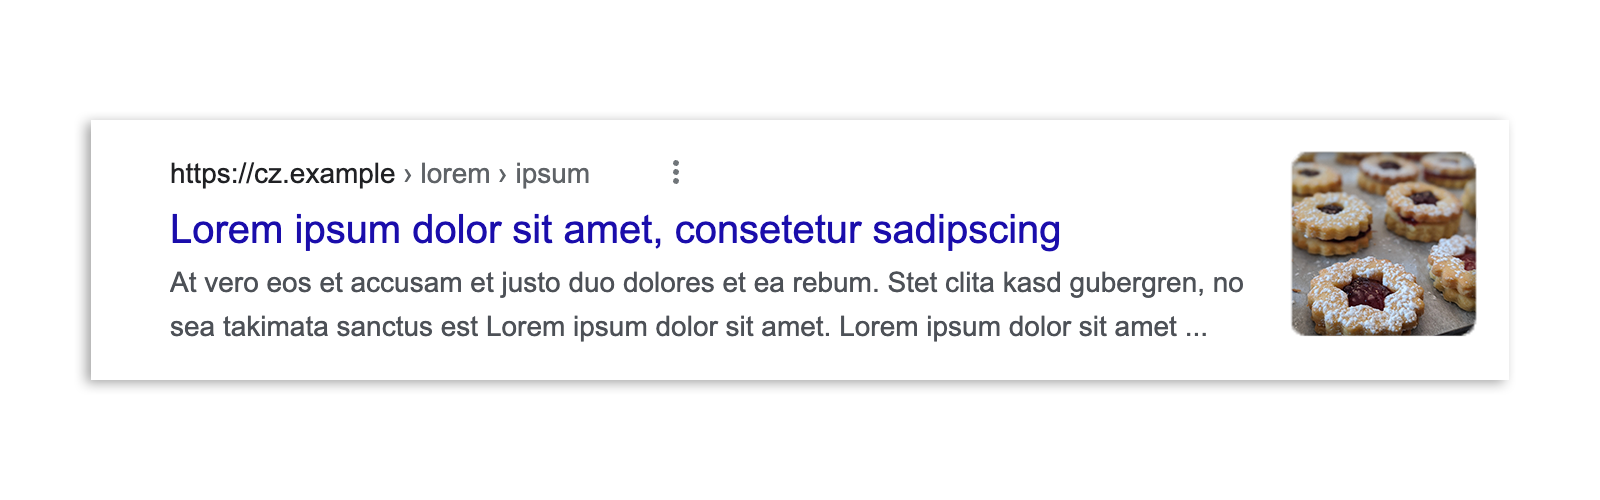 在法律頒布之前，捷克境內的 Google 搜尋結果會顯示文章摘要、圖片預覽、標題和網址。